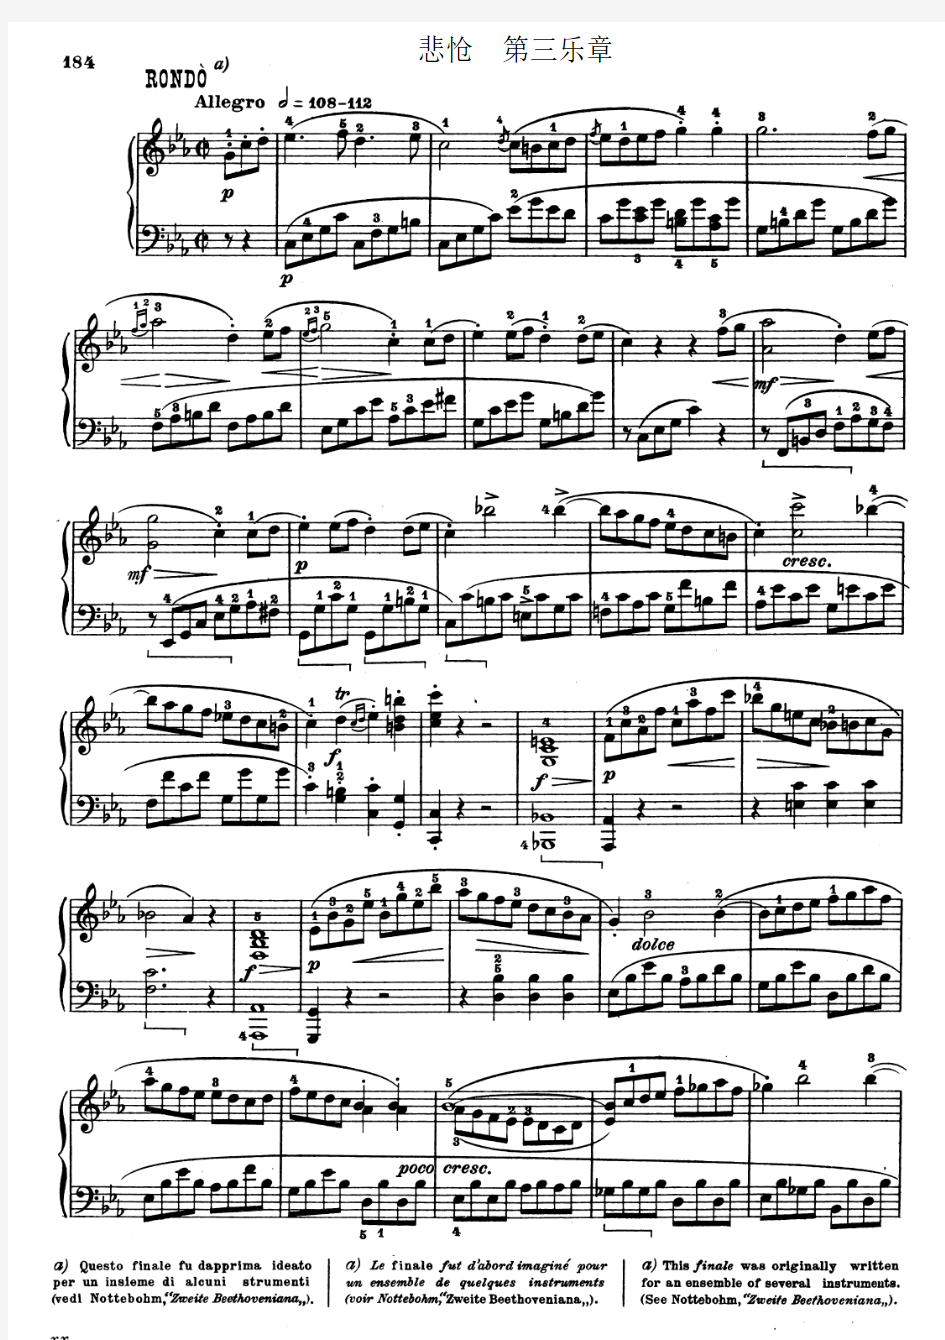 11033悲怆第三乐章 钢琴谱 贝多芬 带指法(优选.)